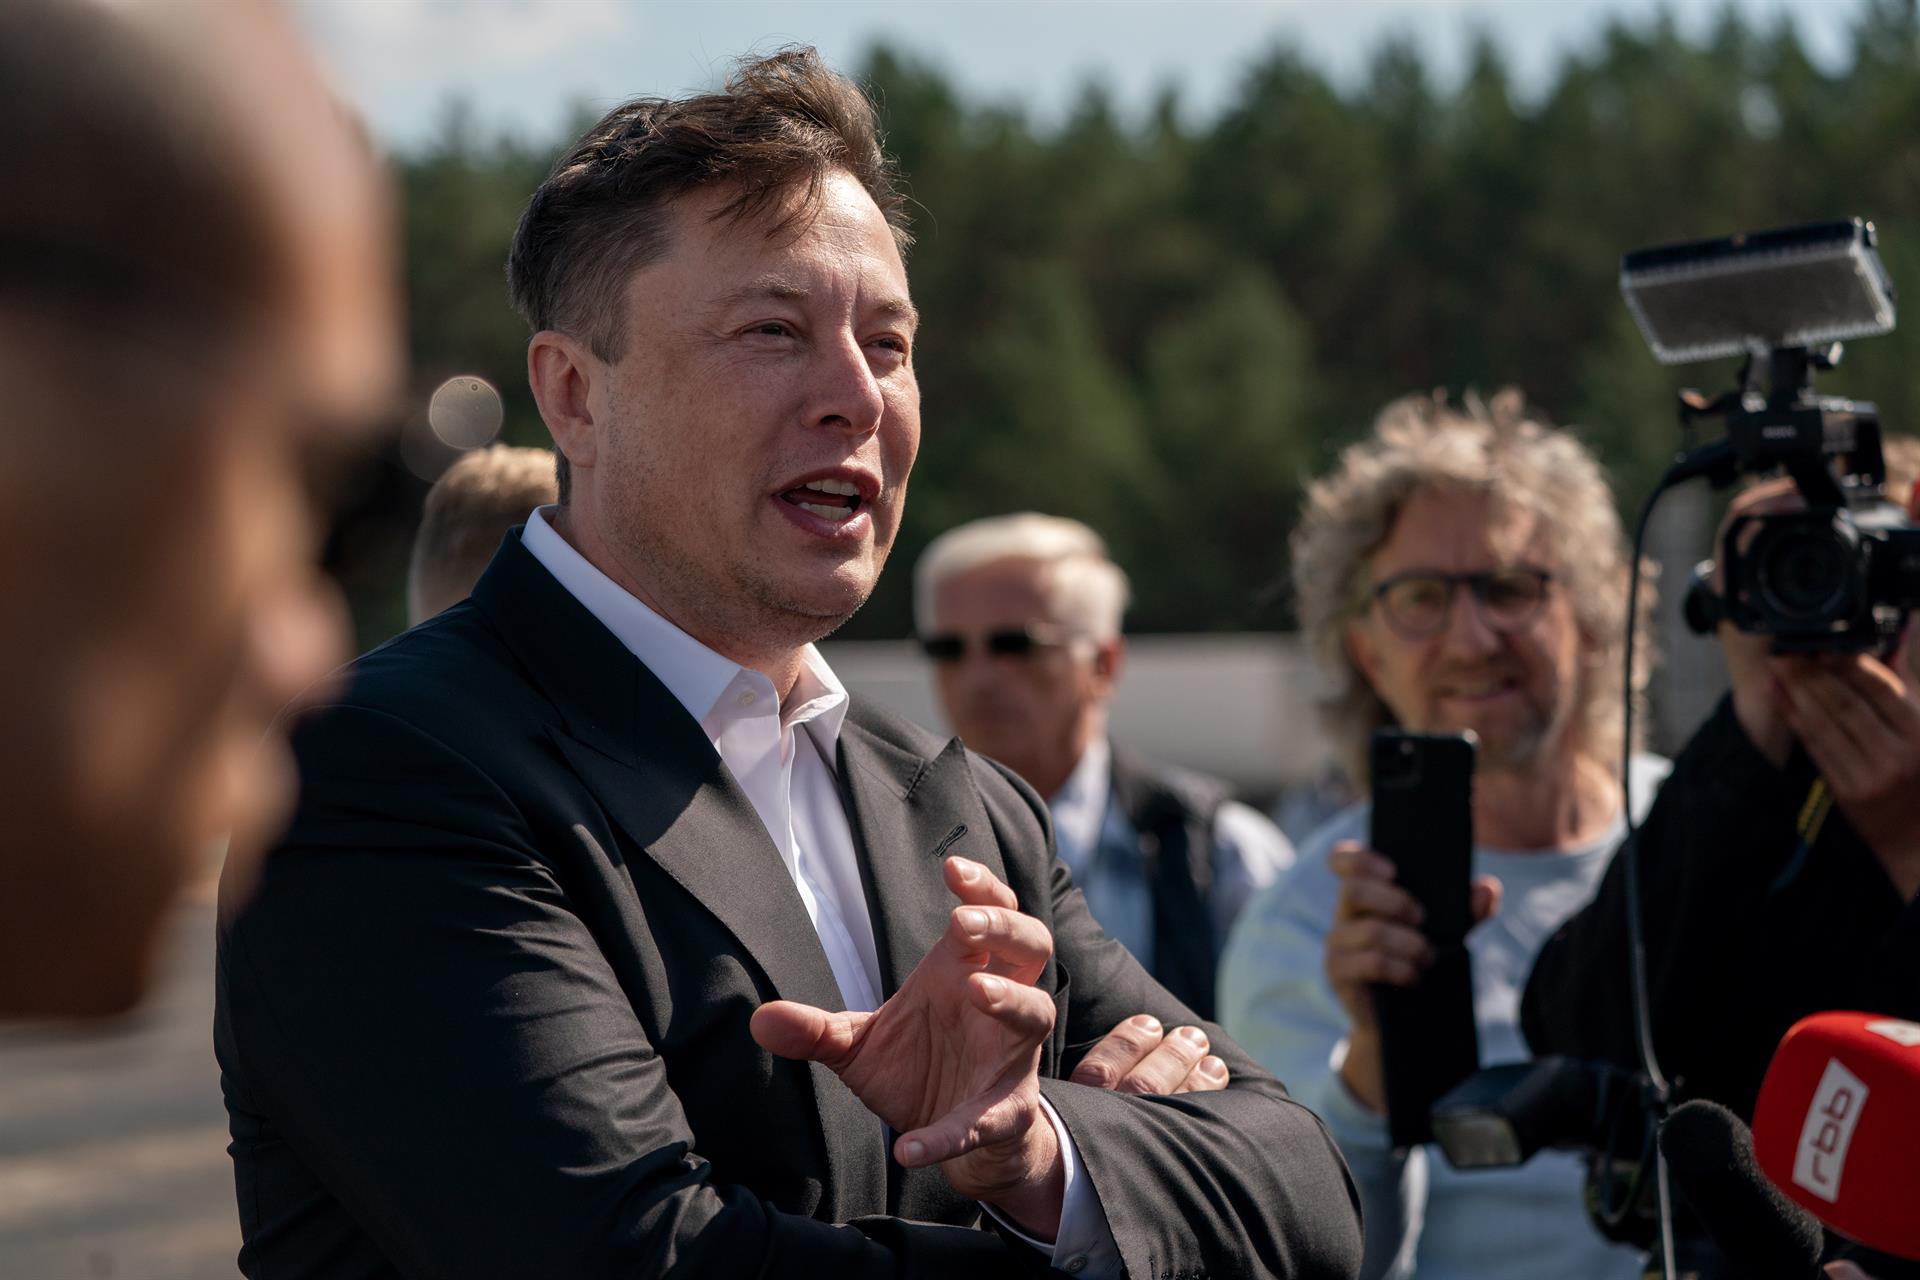 El magnate Elon Musk, en una fotografía de archivo. EFE/EPA/ALEXANDER BECHER